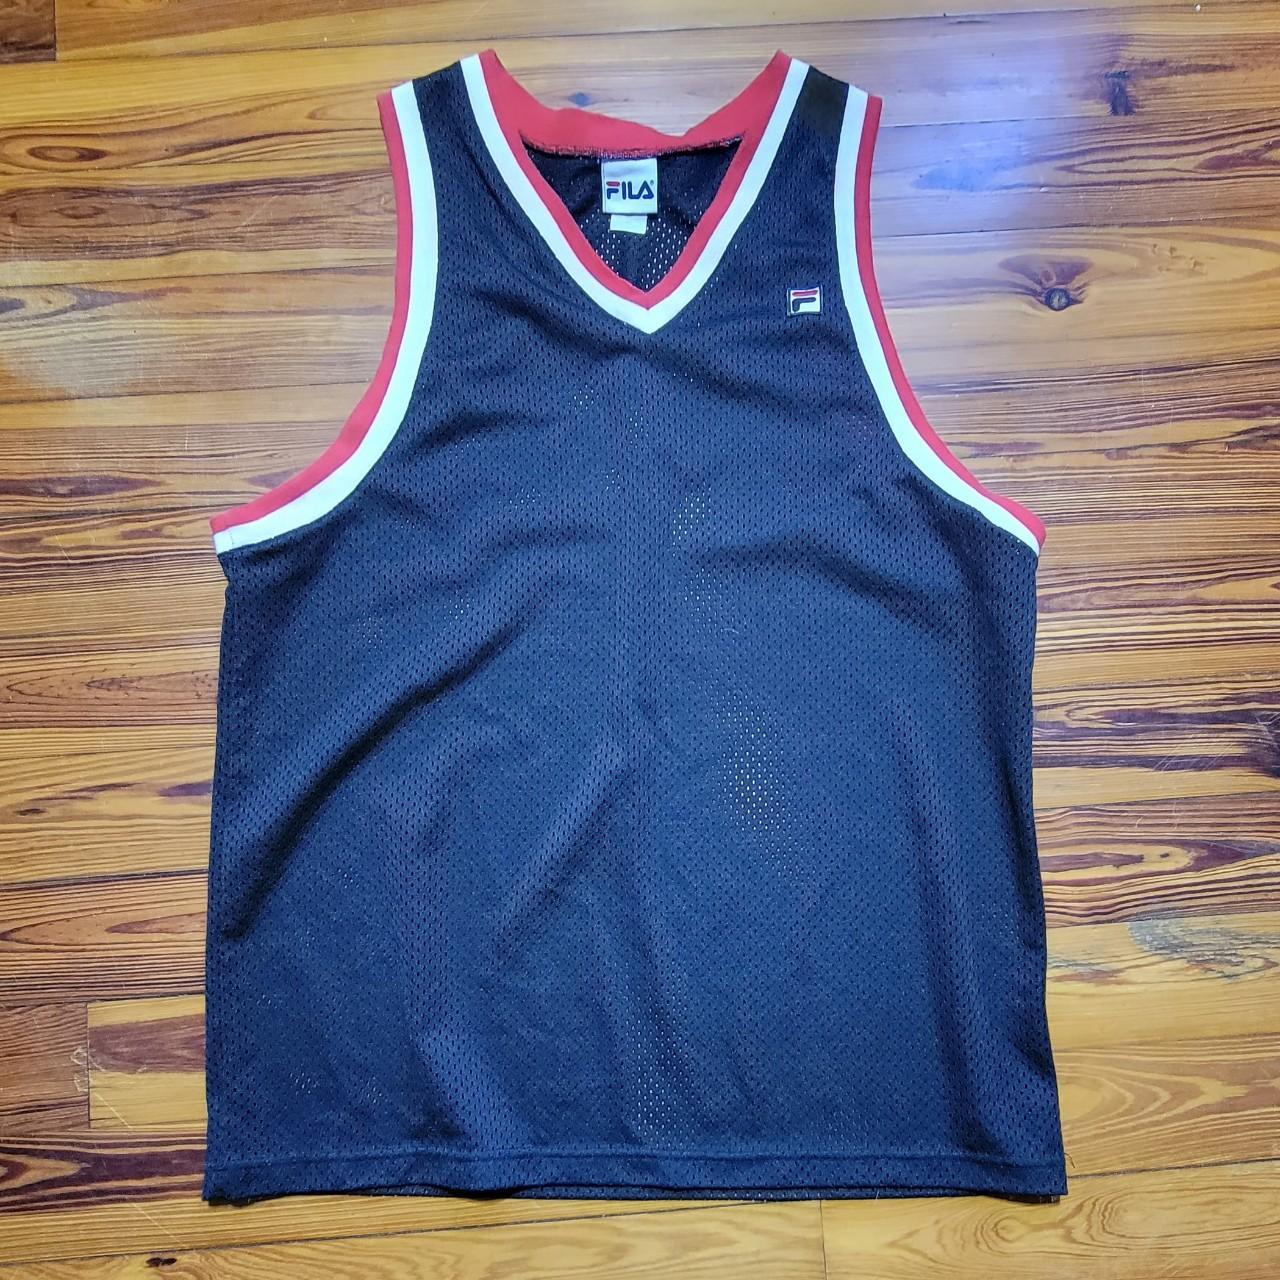 Vintage fila basketball jersey